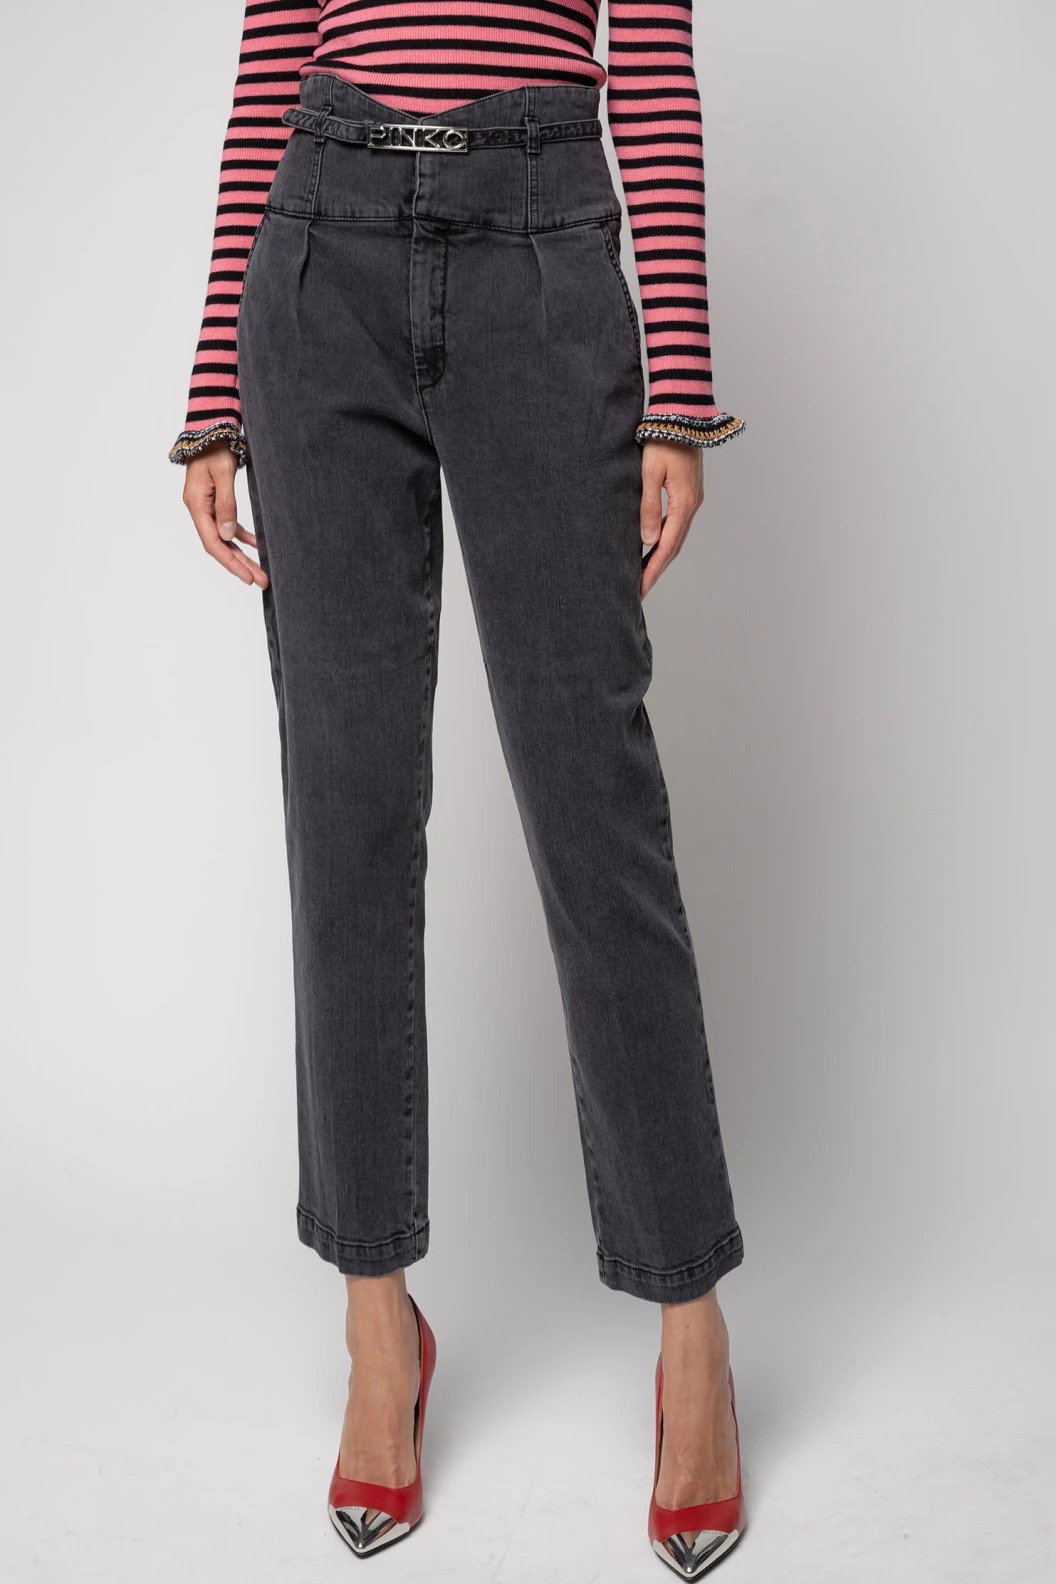 Jeans hoge taille riempje in de kleur dark grey van het merk Pinko